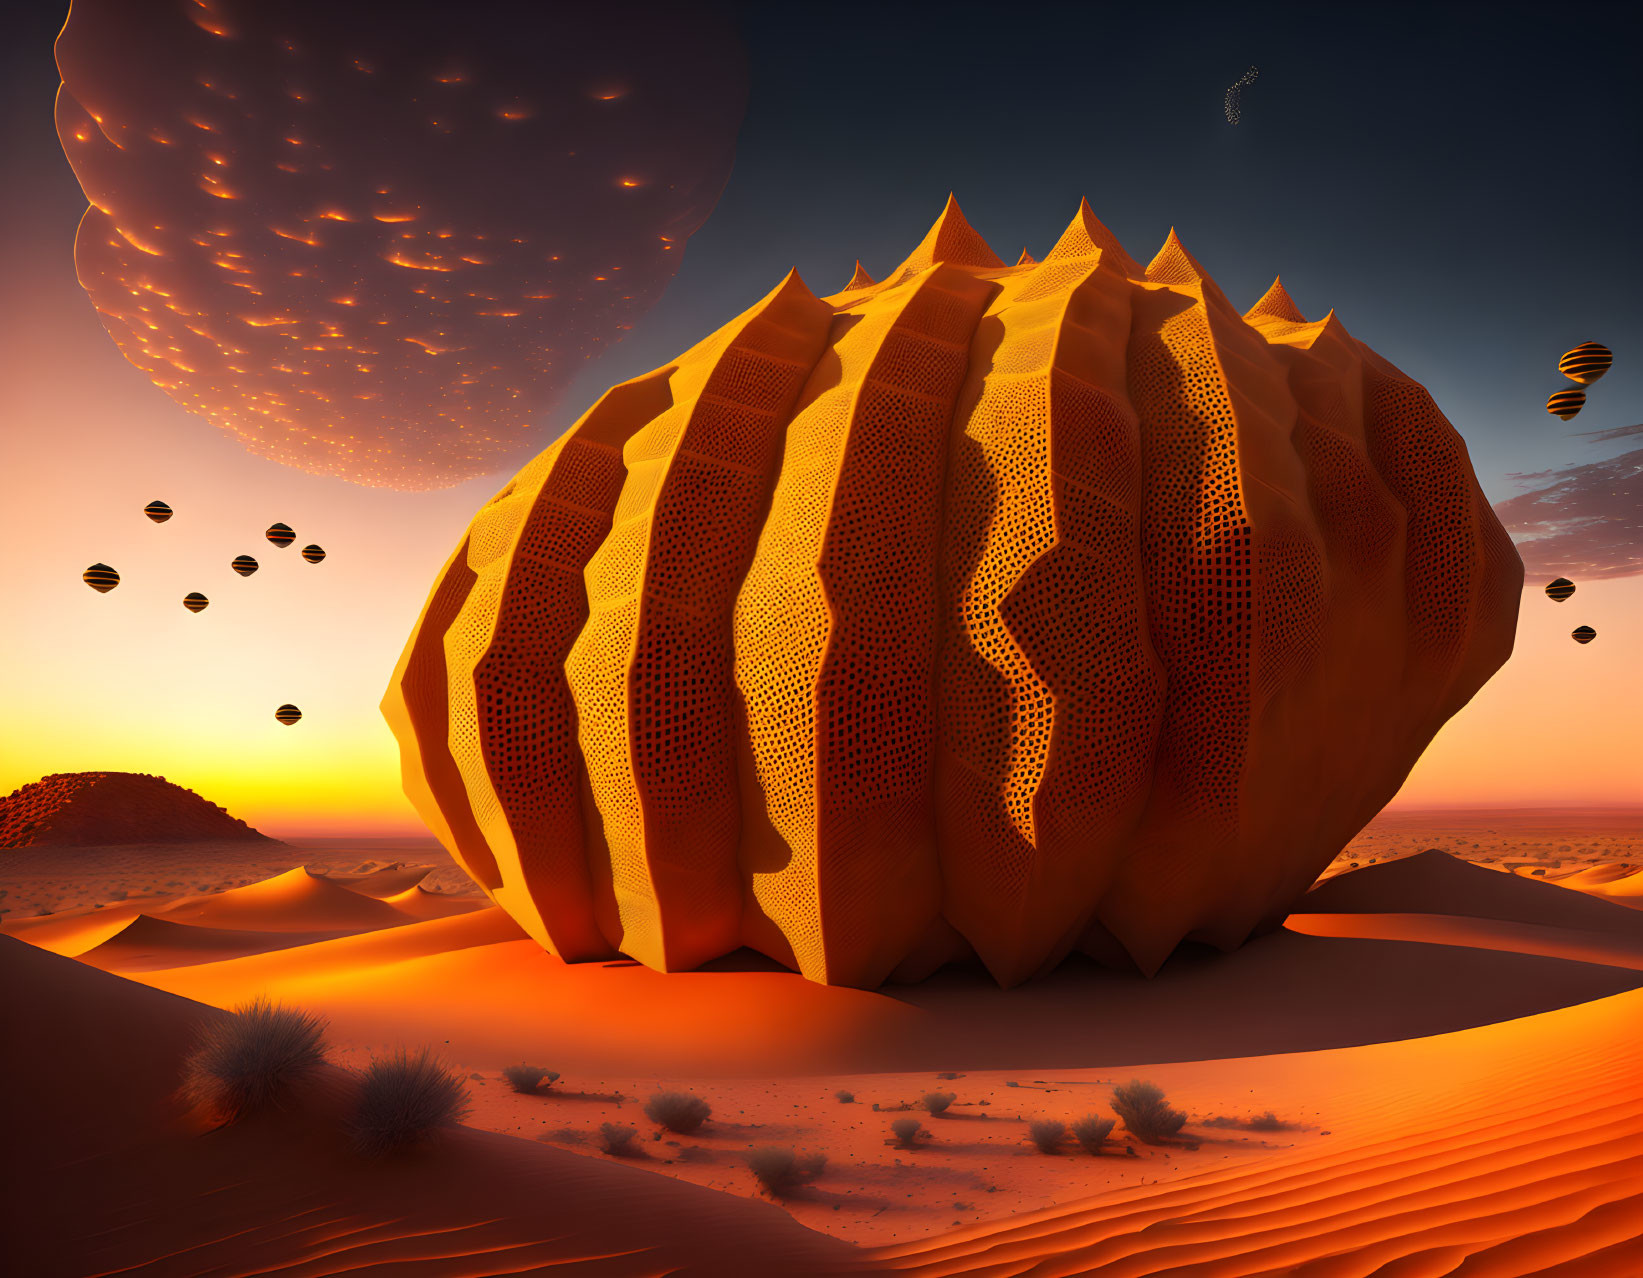 Surreal desert landscape: honeycomb structure, floating rocks, orbs